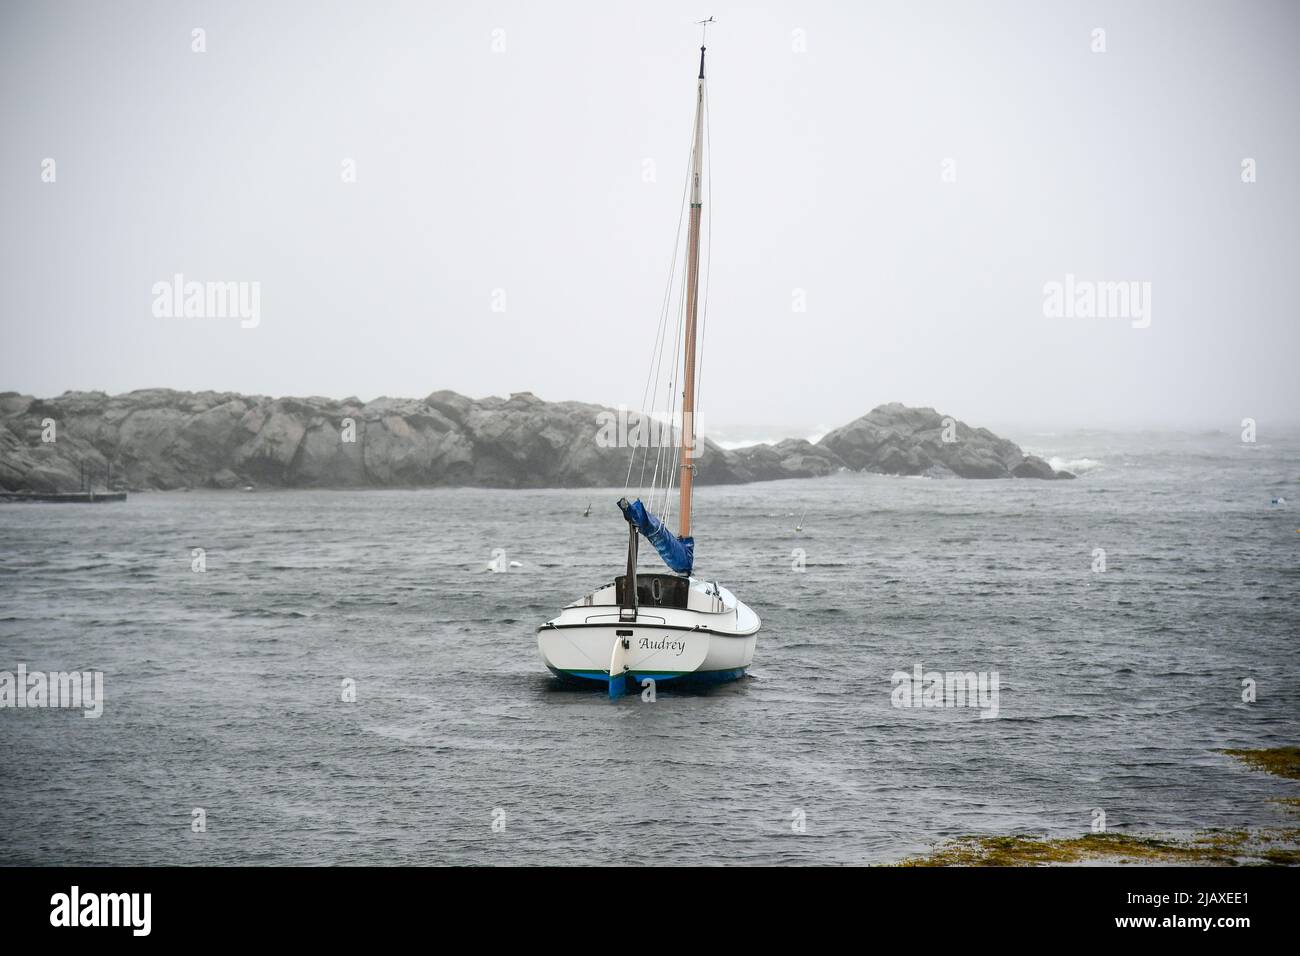 Stock de photos de la tempête tropicale Elsa de 2021 draching Newport, Rhode Island. Bateaux amarrés dans une tempête de l'île Aquidneck. Banque D'Images